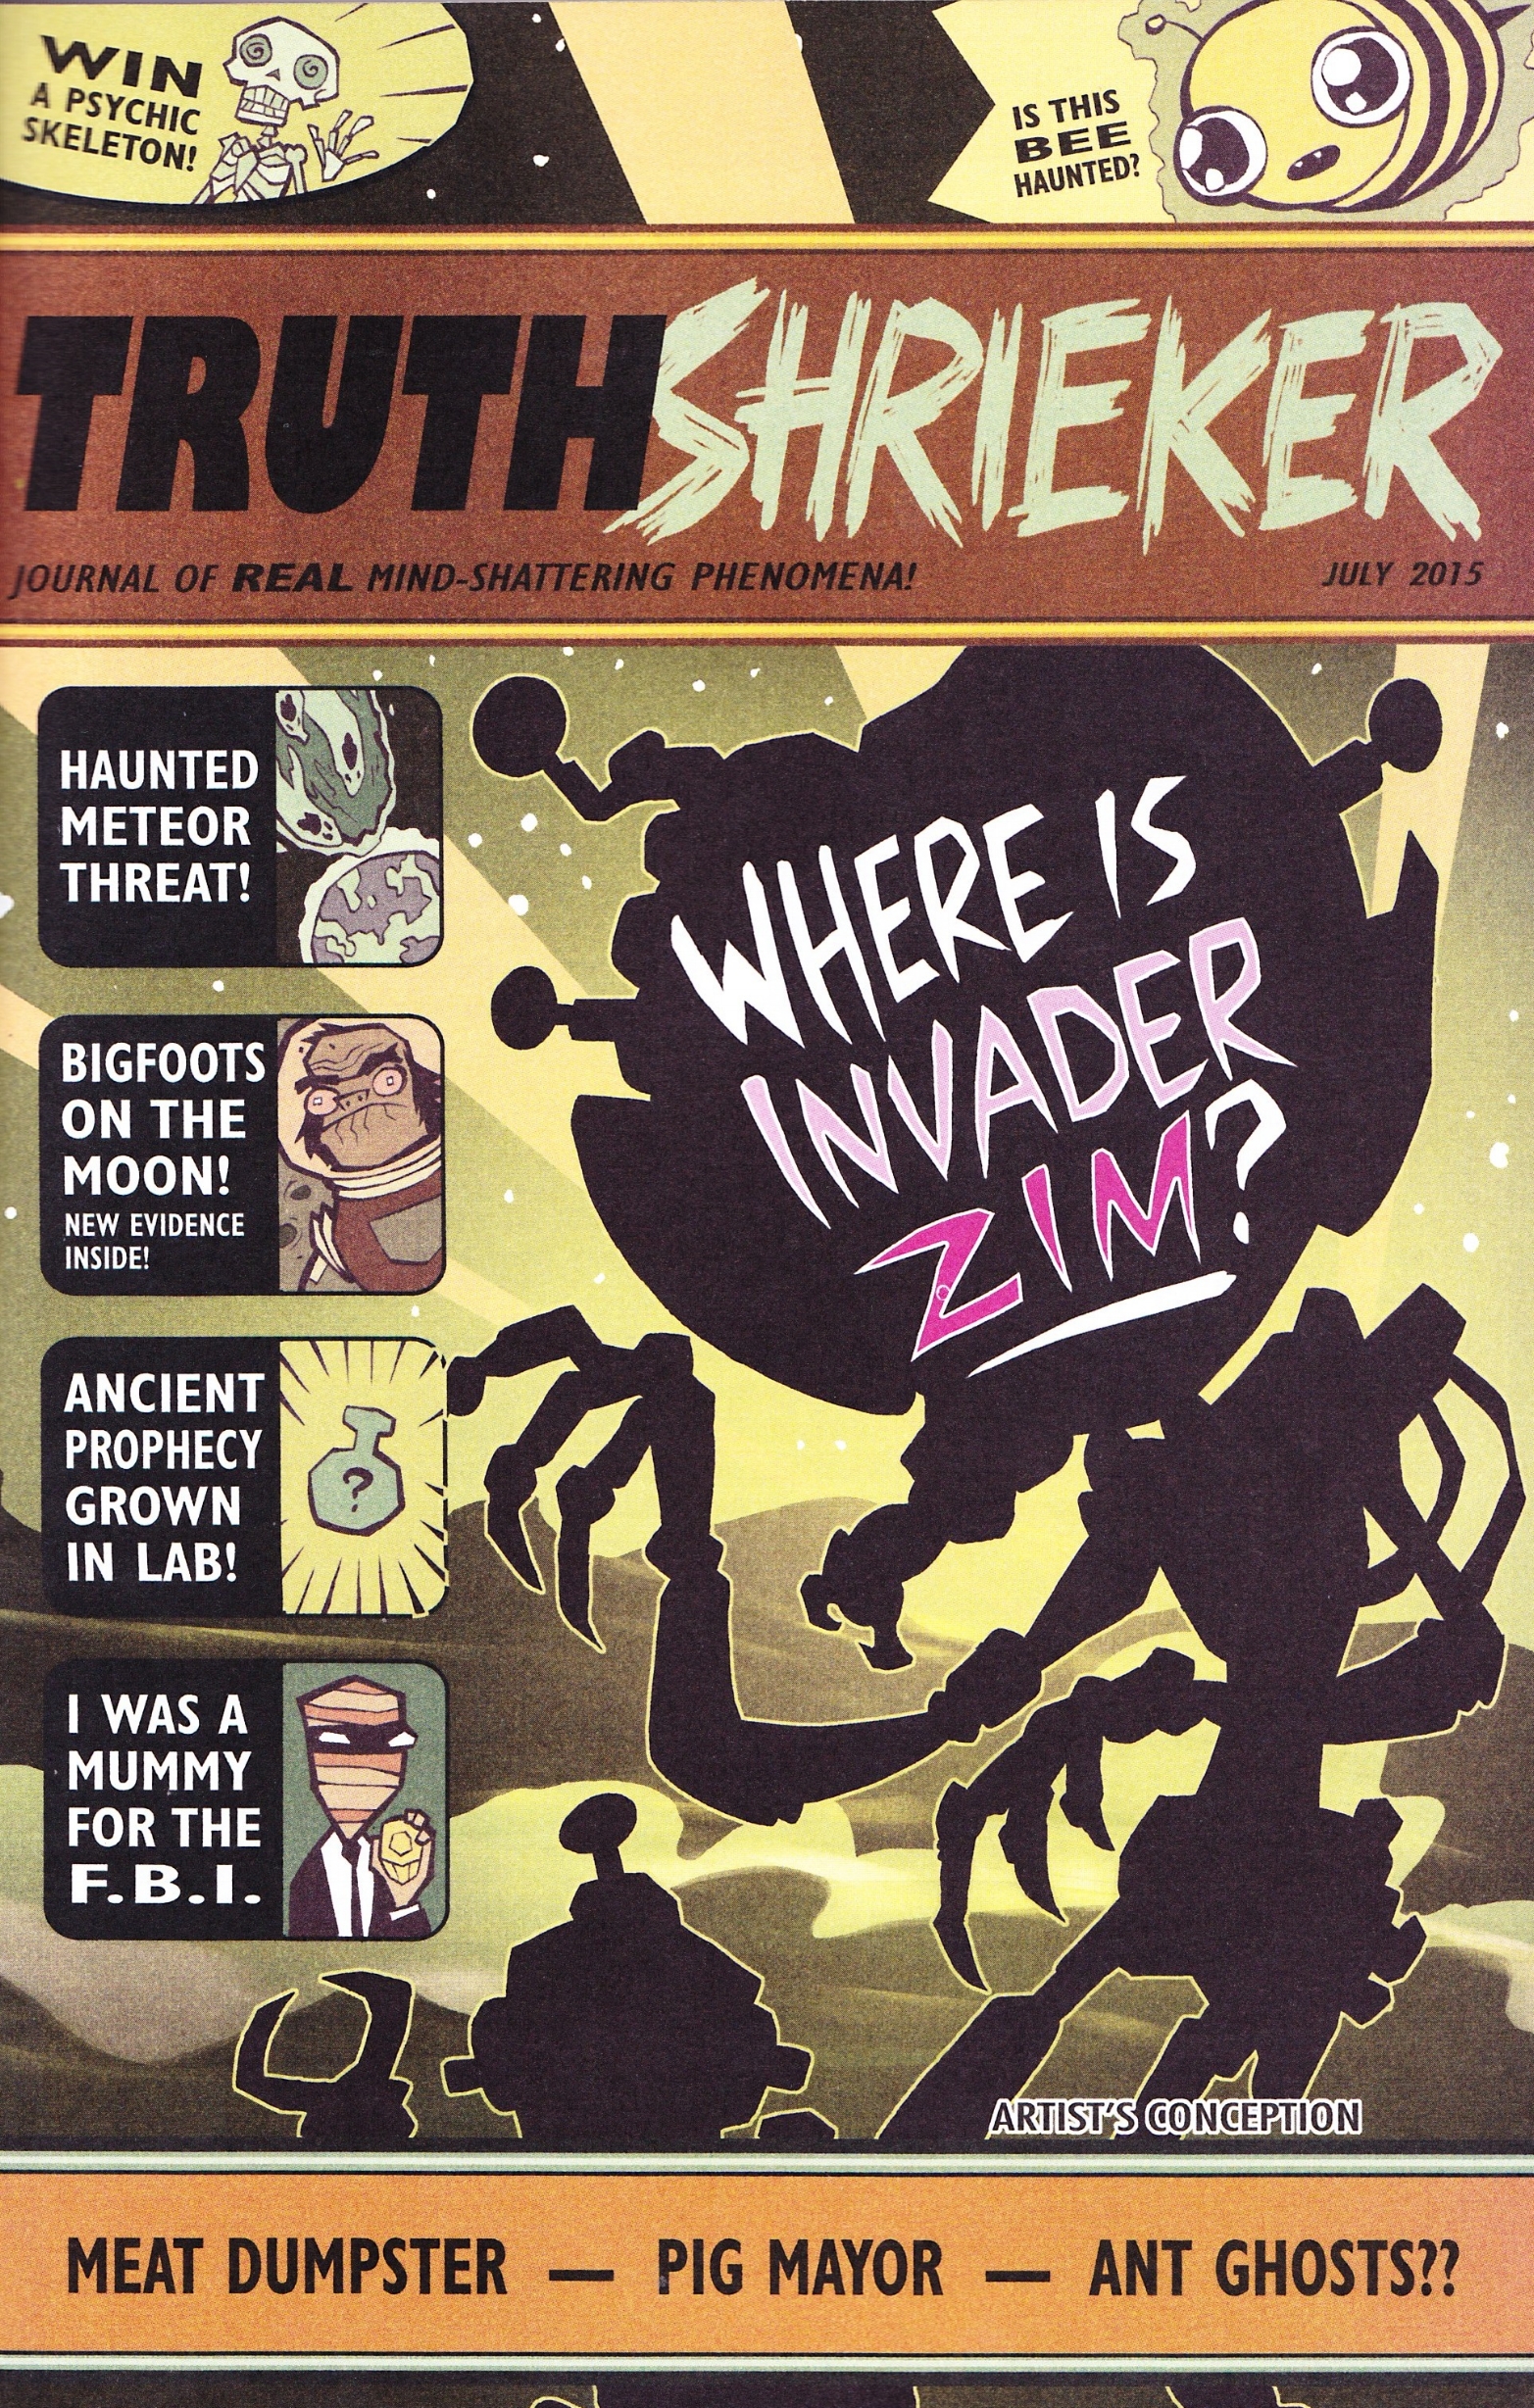 TruthShrieker_(Issue-0)_Cover.jpg